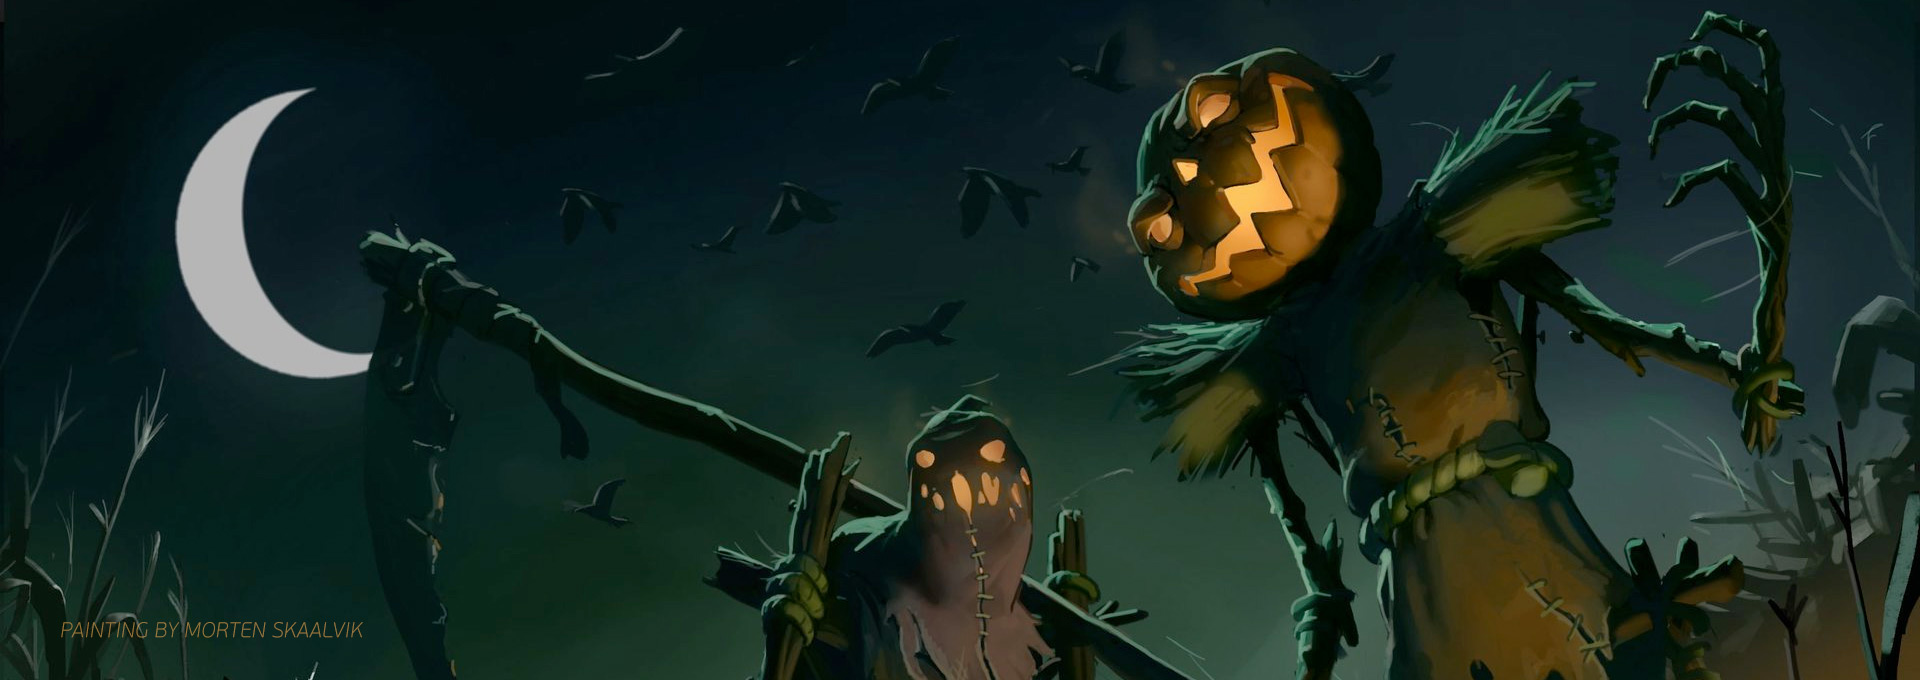 25 Spooky Halloween Paintings